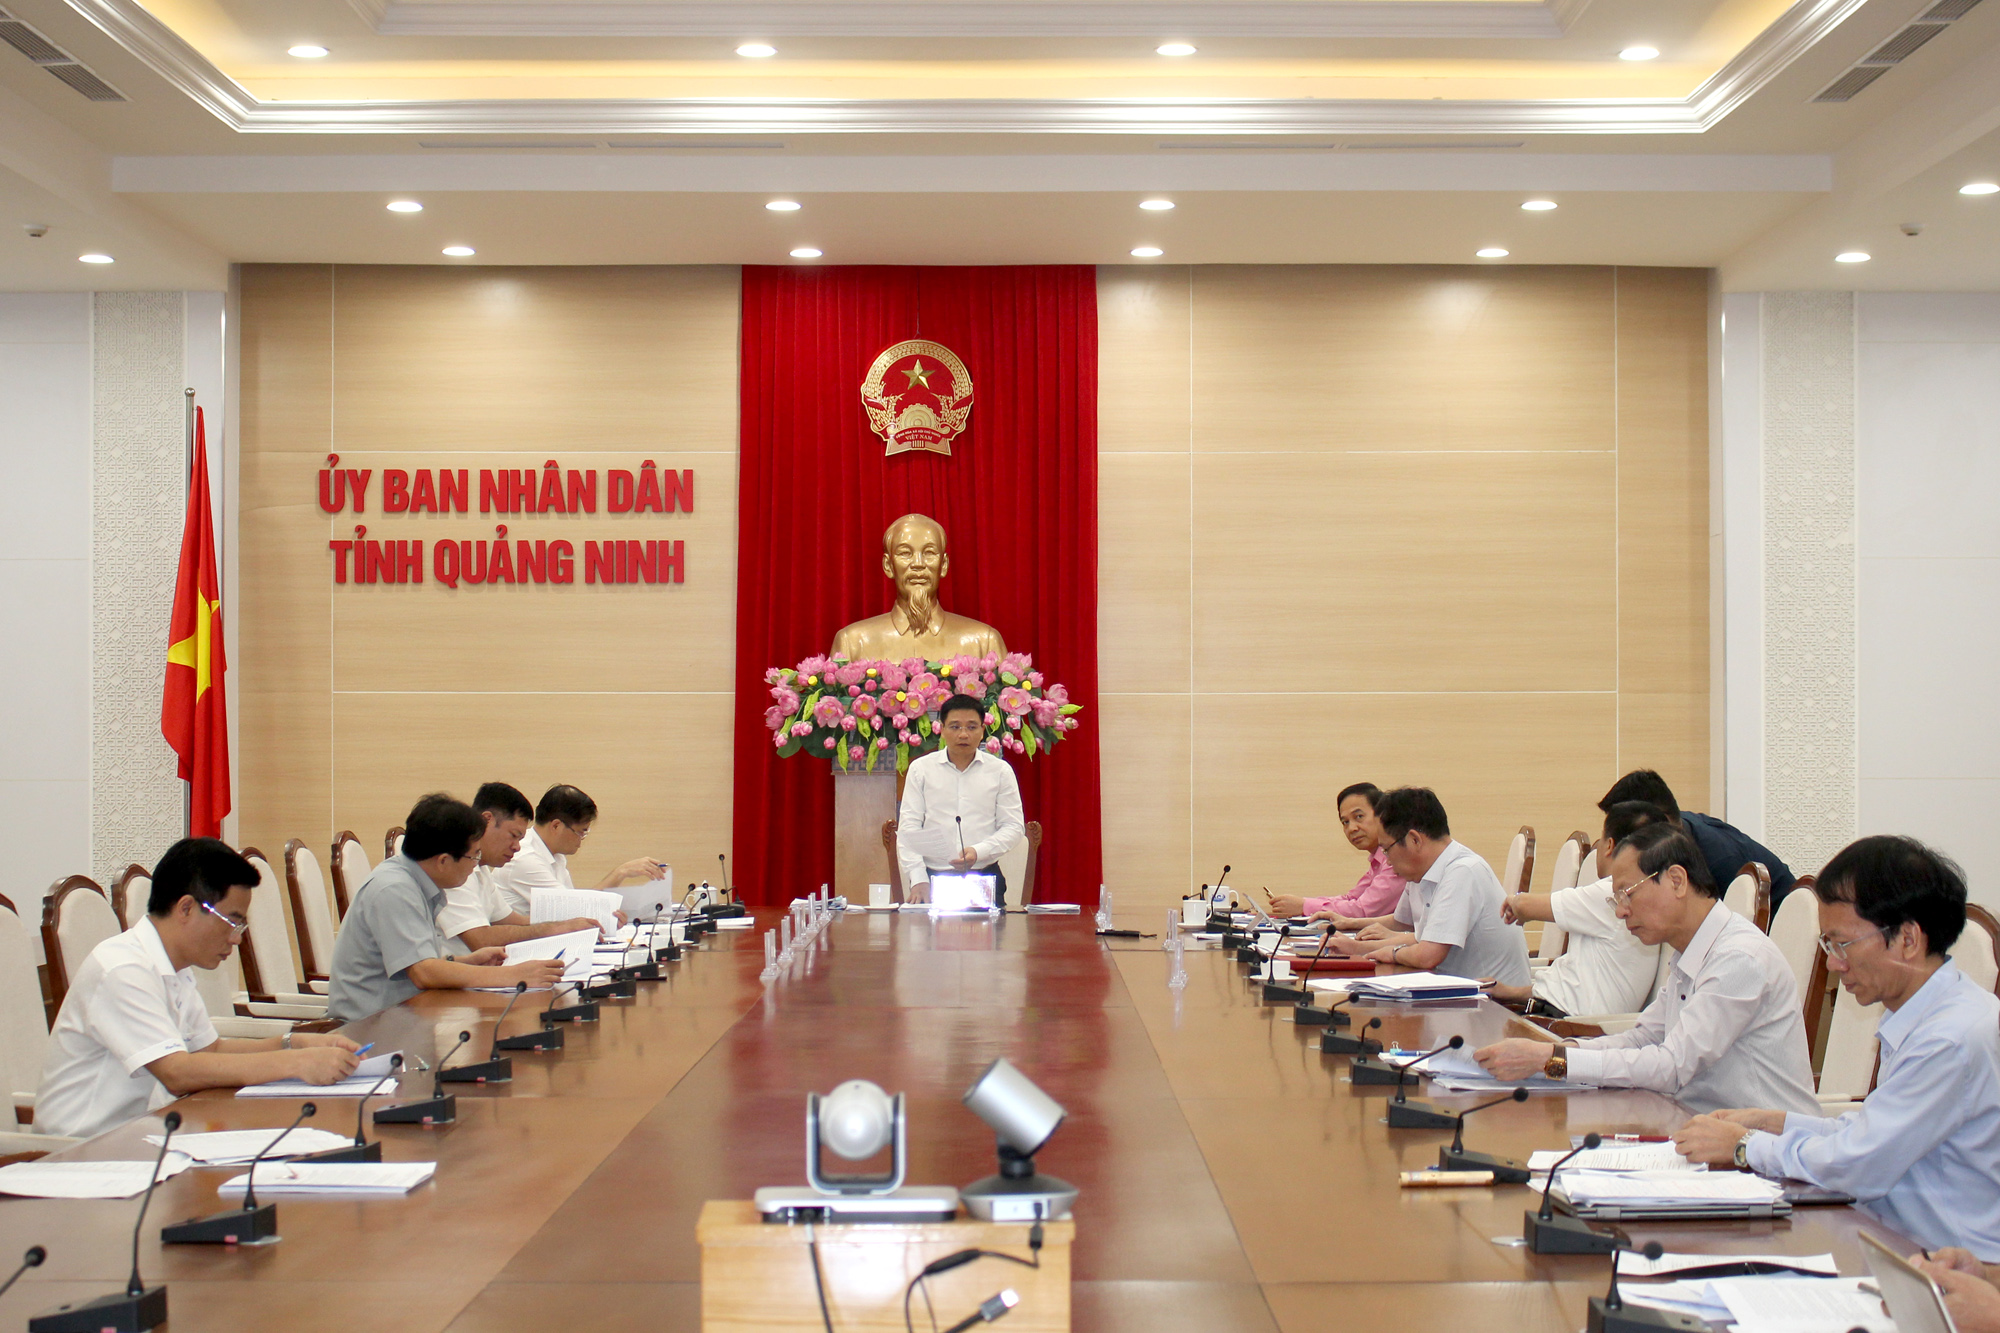 Đồng chí Nguyễn Văn Thắng, Bí thư Ban Cán sự Đảng, Chủ tịch UBND tỉnh, kết luận cuộc họp.